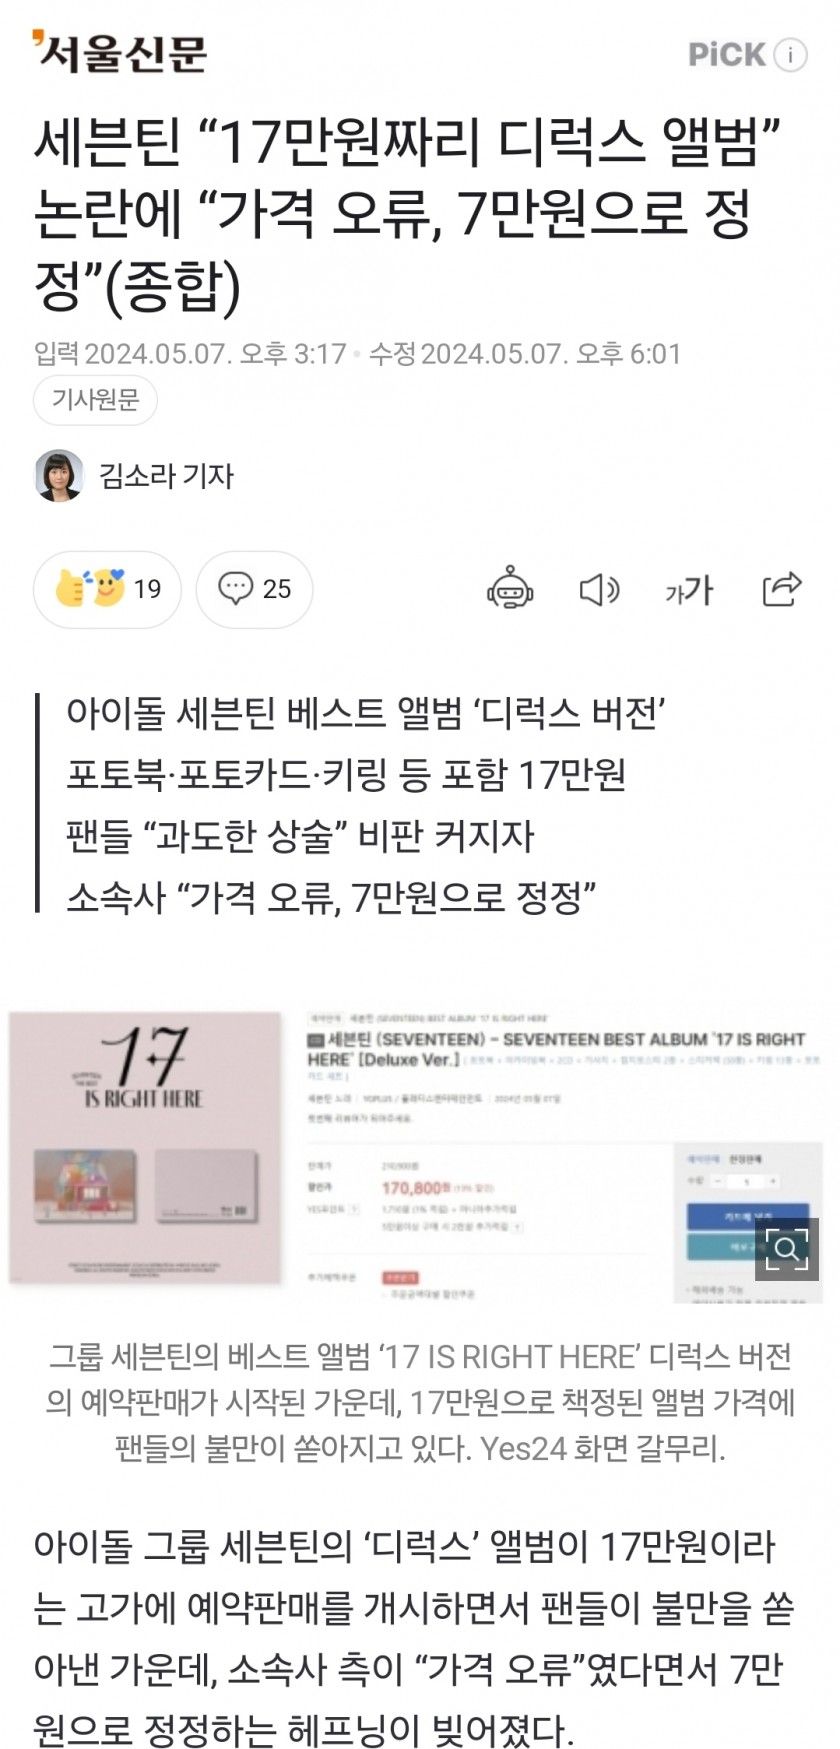 세븐틴 “17만원짜리 디럭스 앨범” 논란에 “가격 오류, 7만원으로 정정”